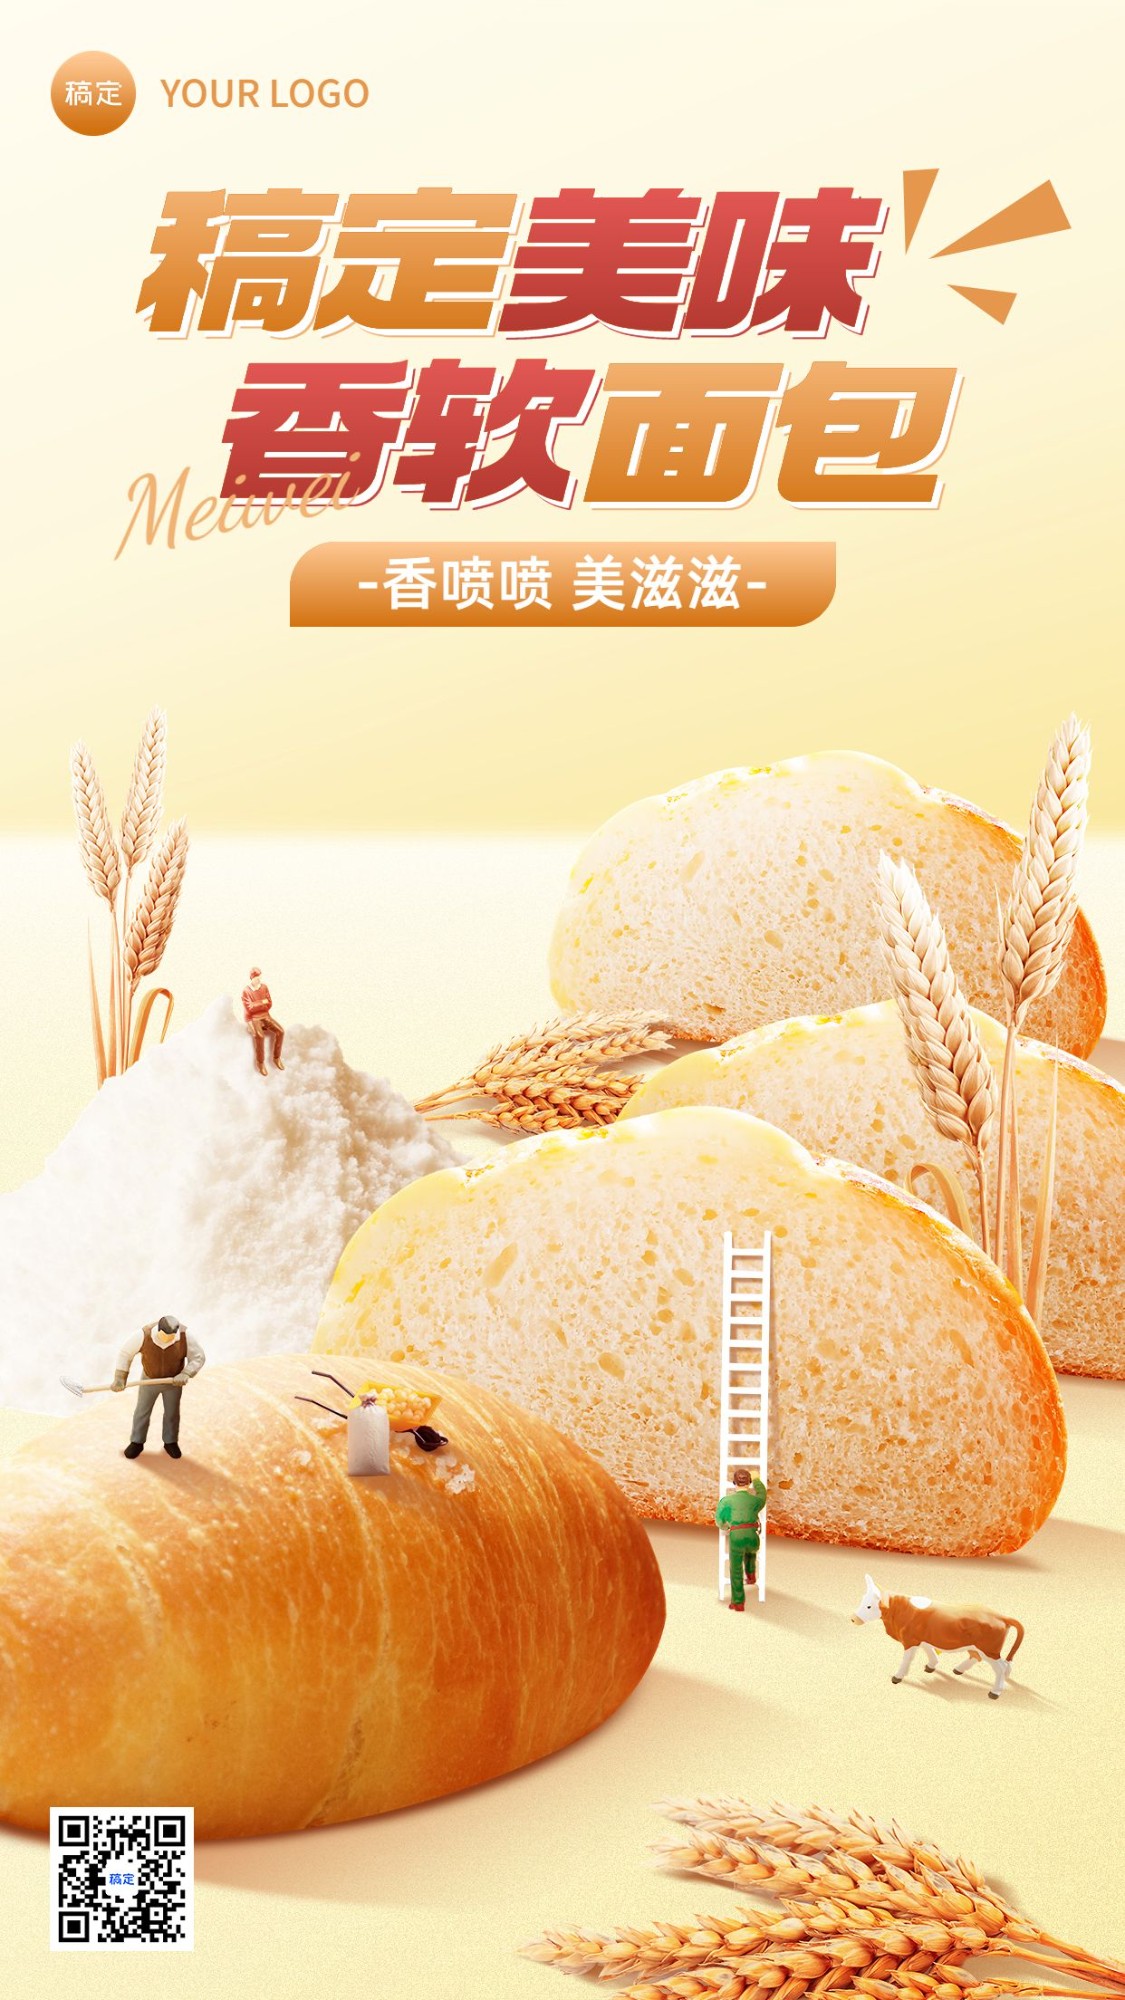 餐饮烘焙面包产品营销微缩合成手机海报